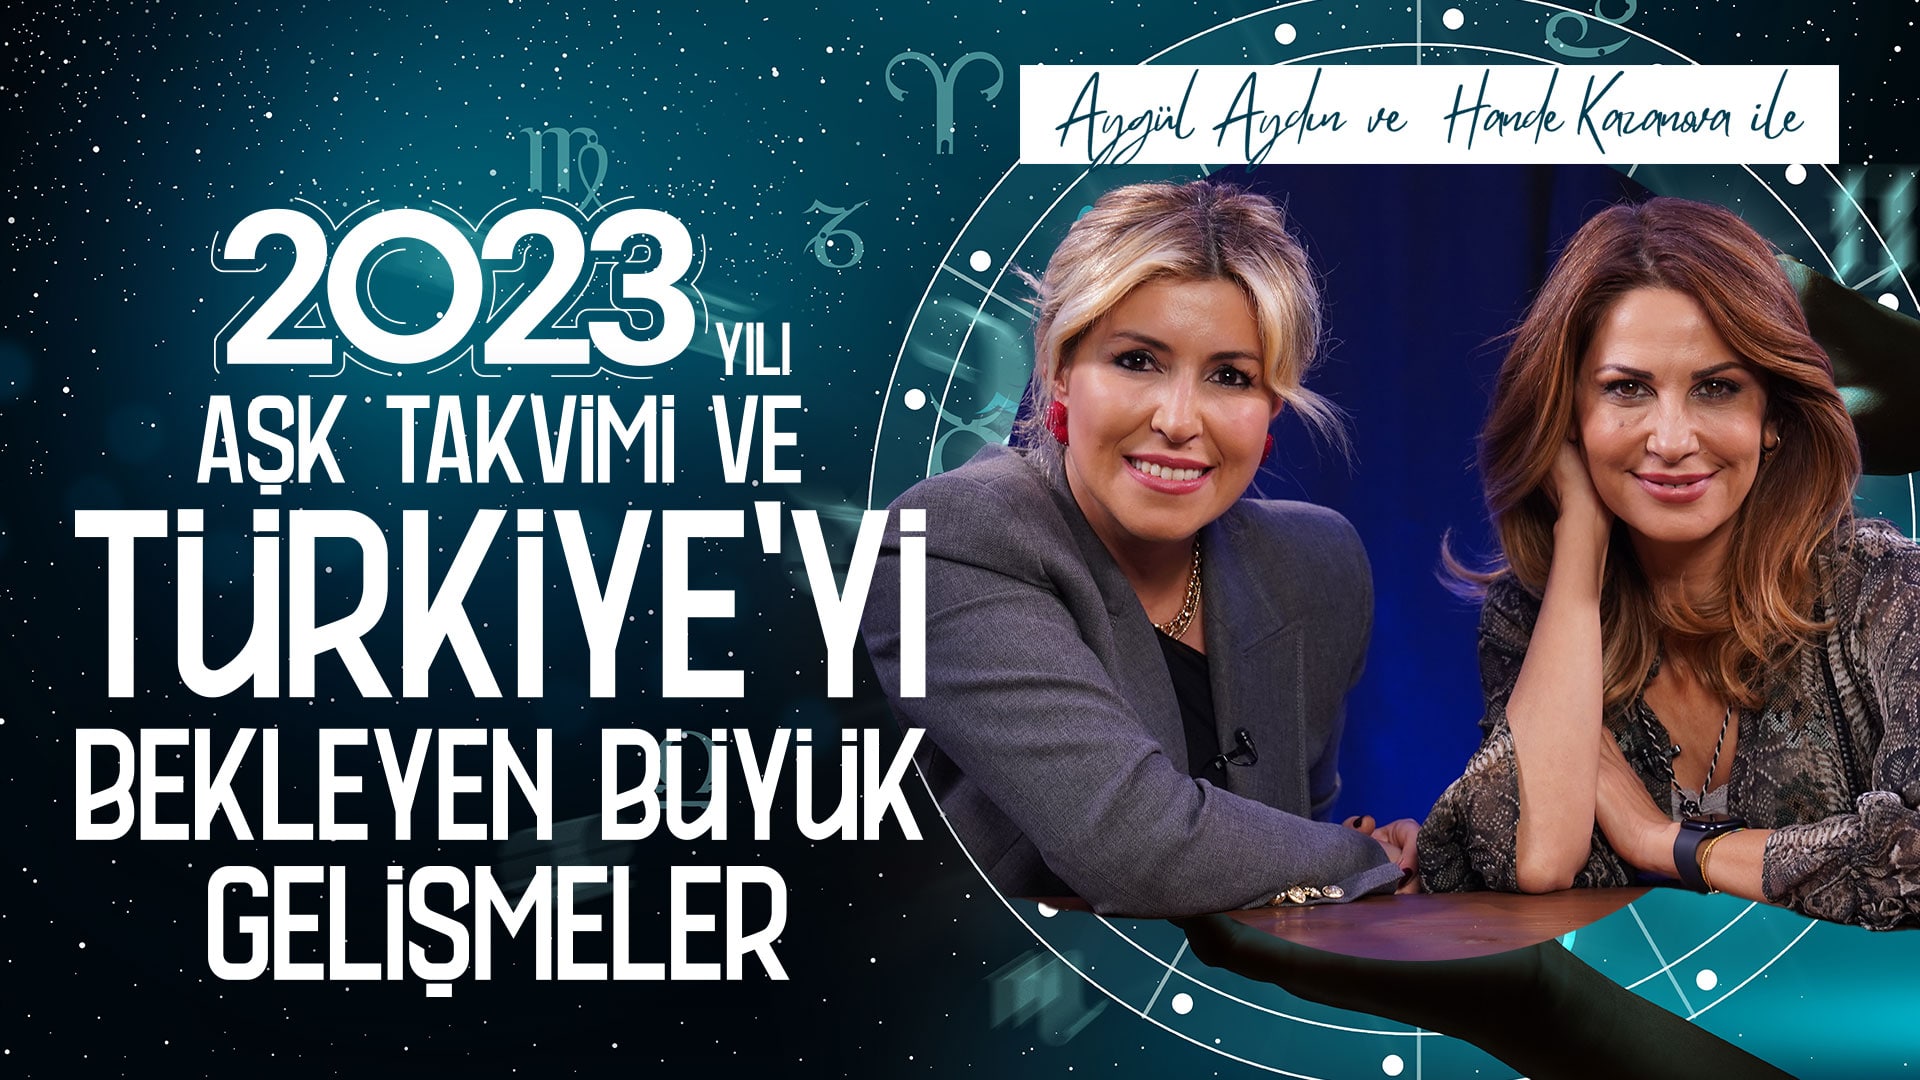 2023 Aşk Dolu Bir Yıl Mı? Burçlar Ne Diyor? | Aygül Aydın & Hande Kazanova ile Astroloji